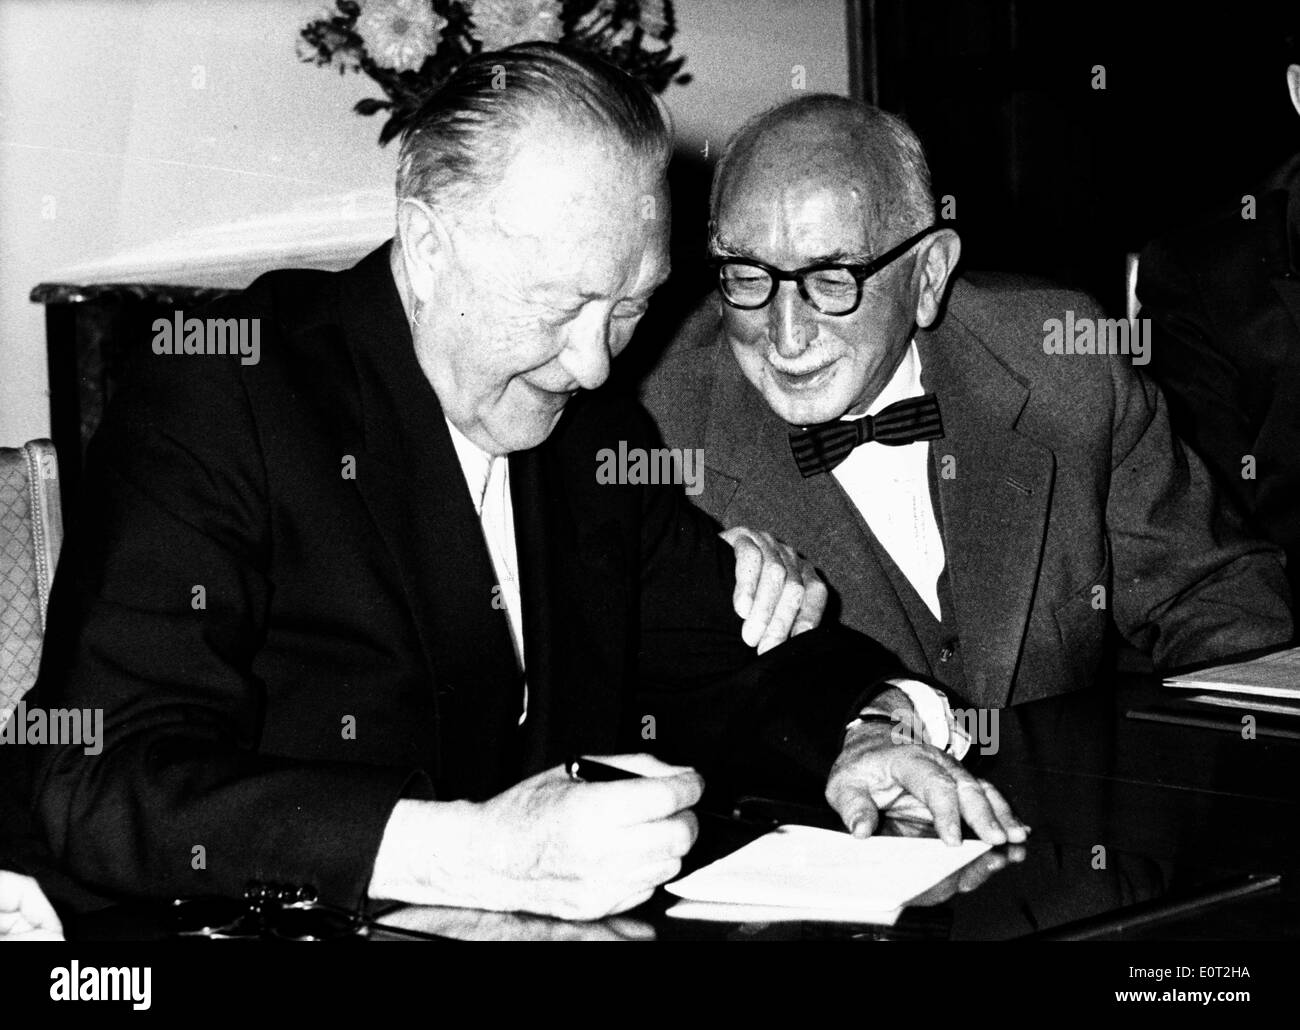 Konrad Adenauer and Fritz Schaffer sign document Stock Photo